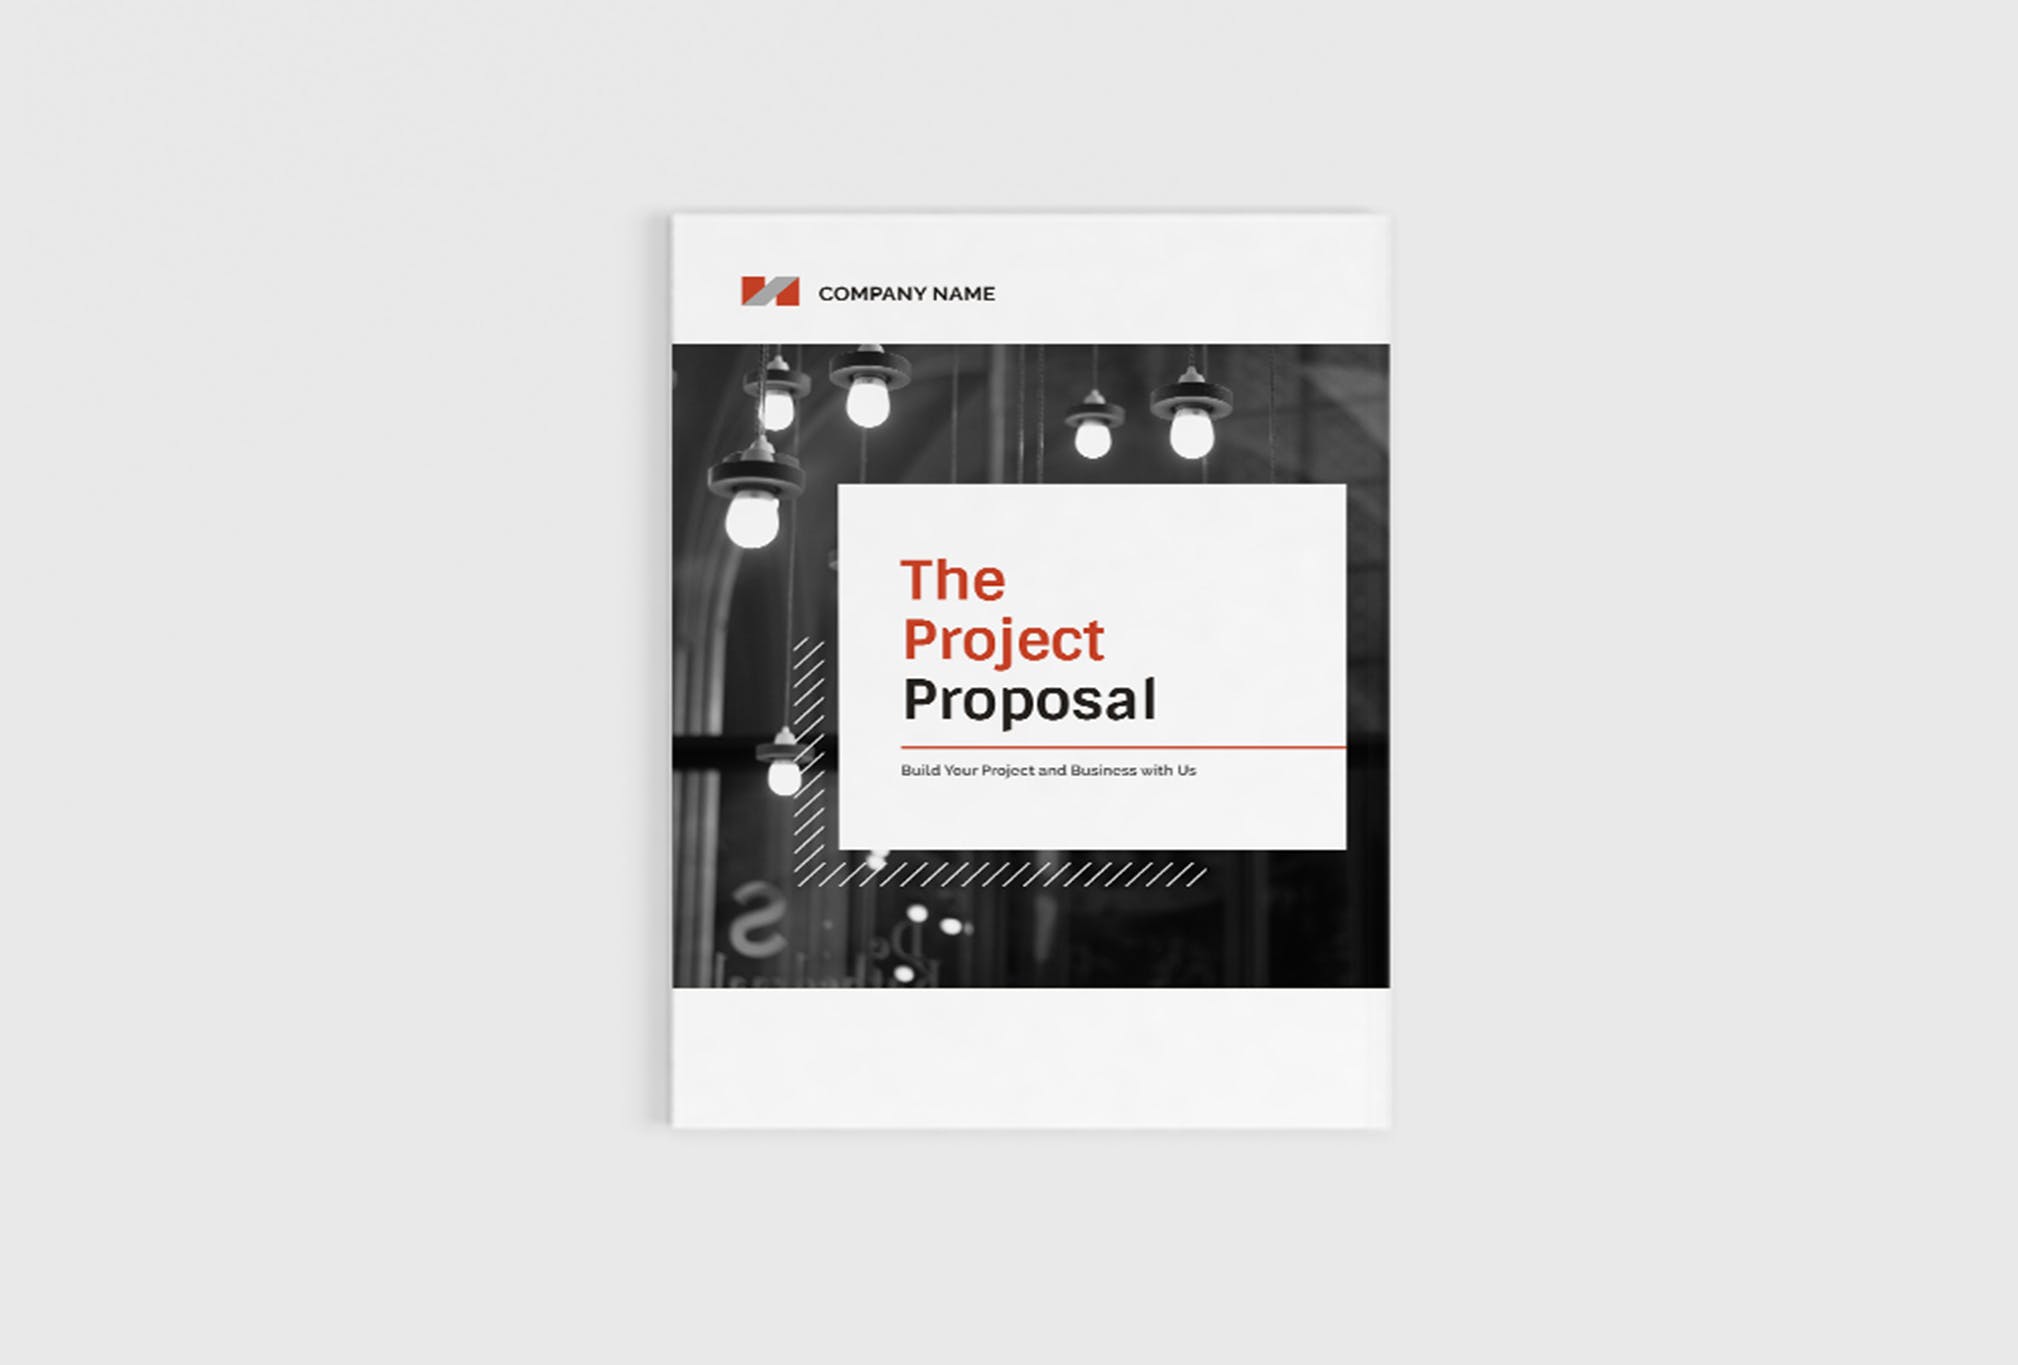 项目商业计划书/项目提案设计模板 The Project Company Profile插图(1)